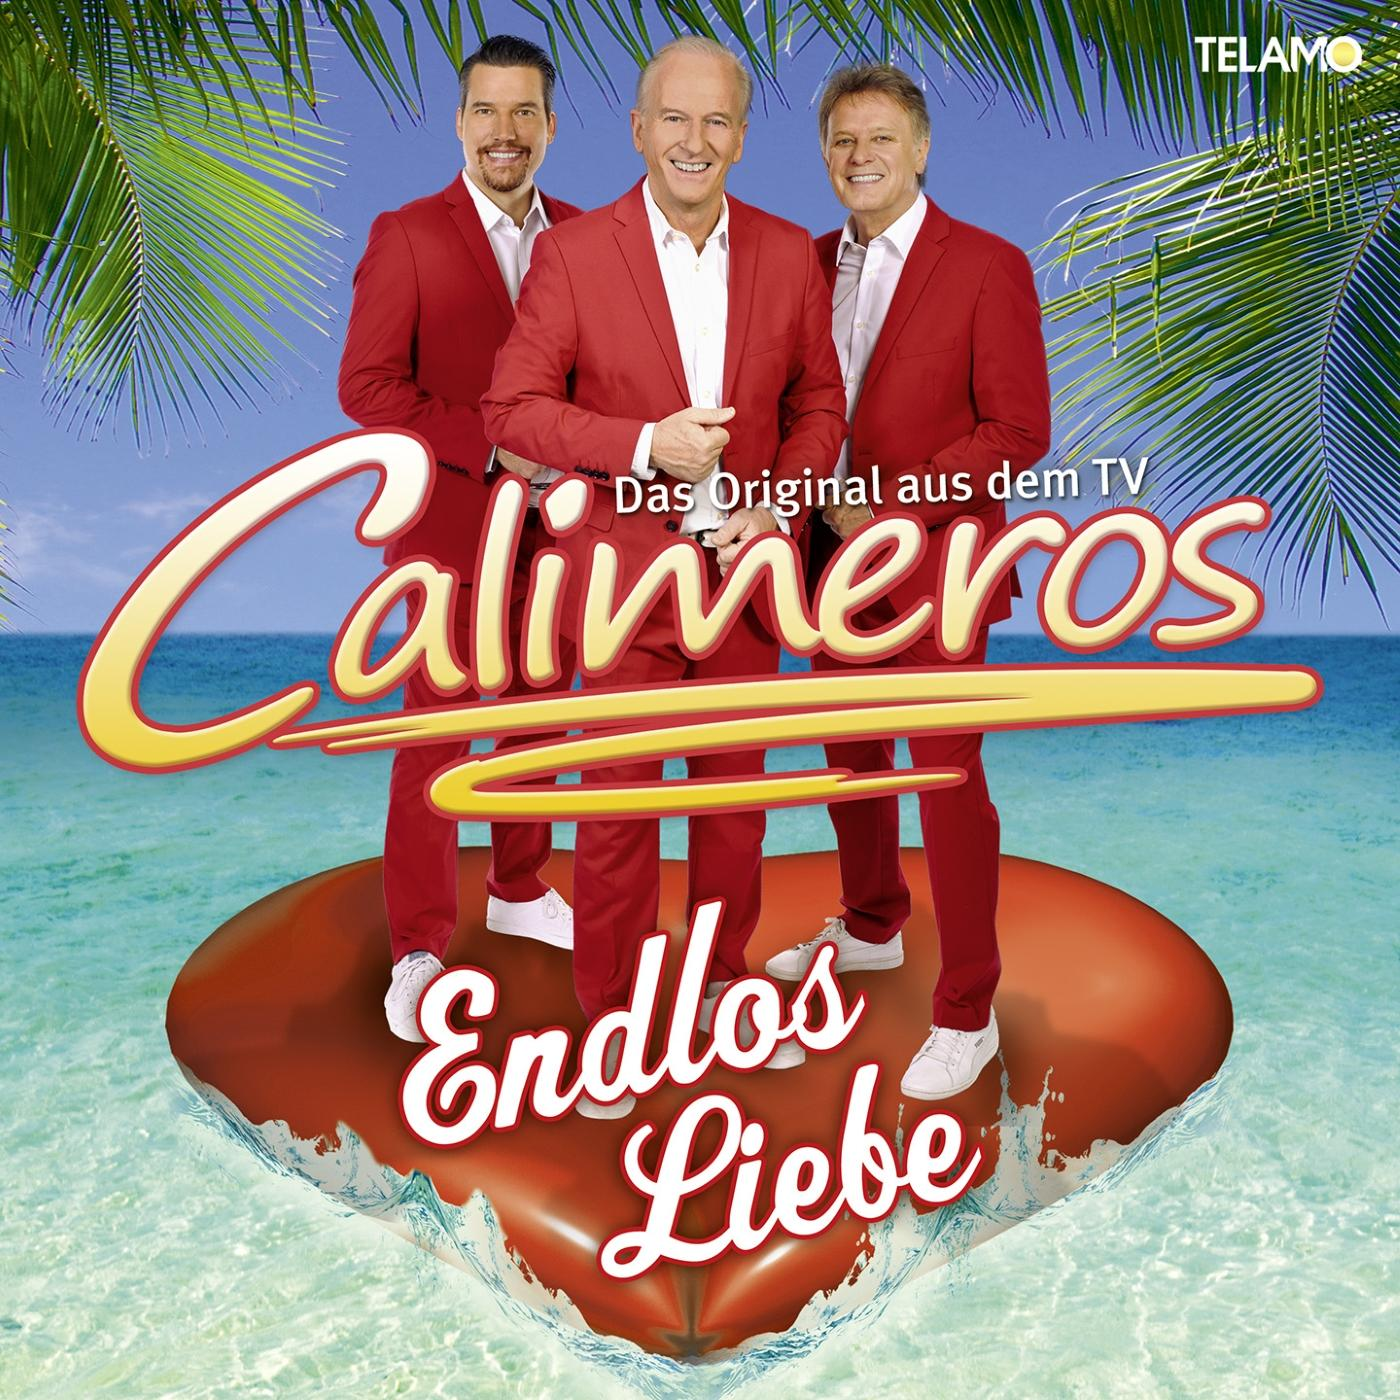 Calimeros - Endlos Liebe (CD) 